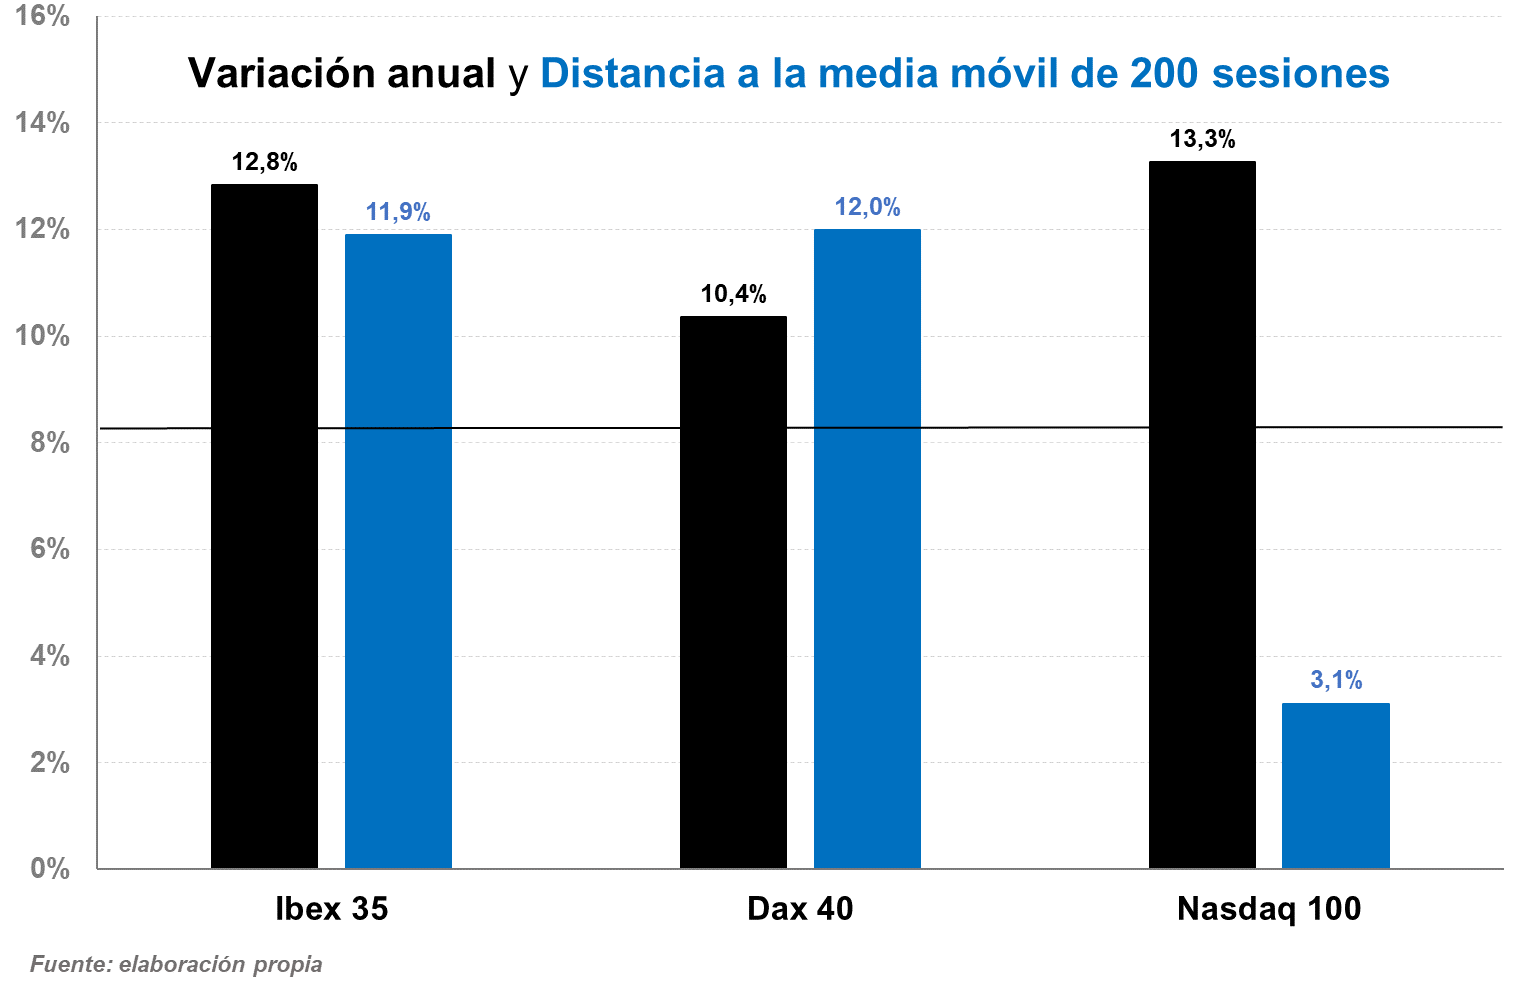 Variación anual y distancia a media de 200 sesiones Dax Ibex Nasdaq CMC Markets